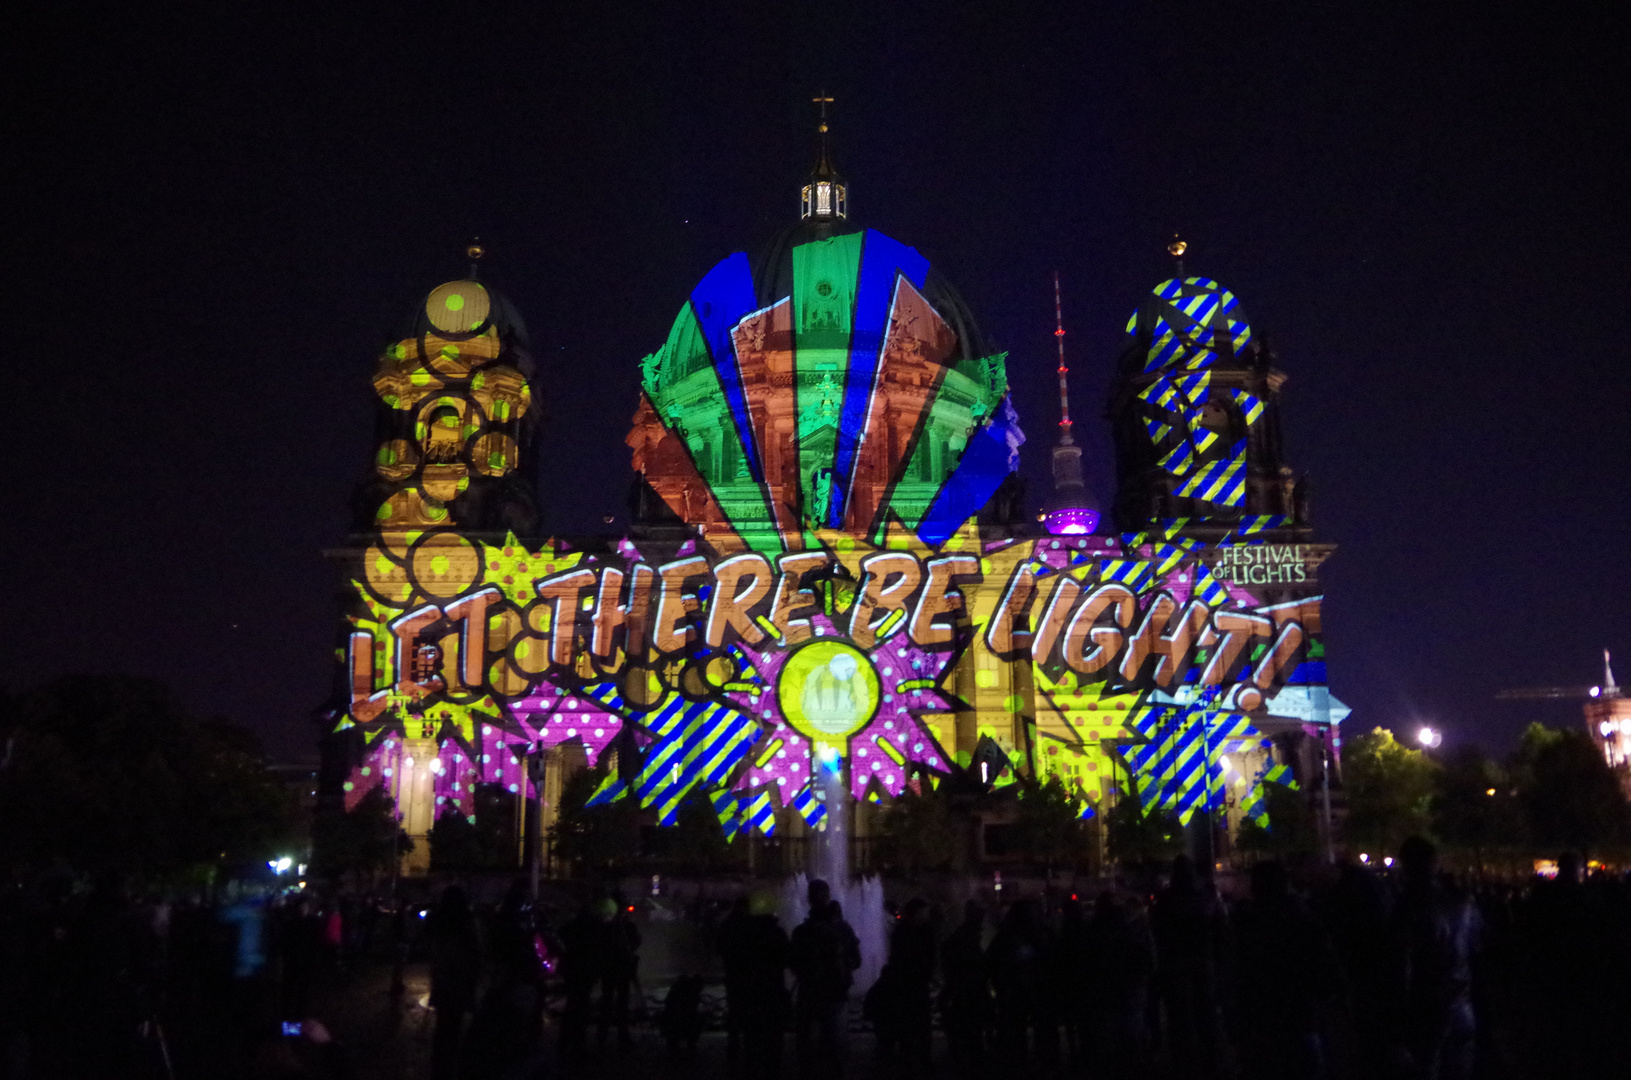 Festival of Lights 2015 - 7